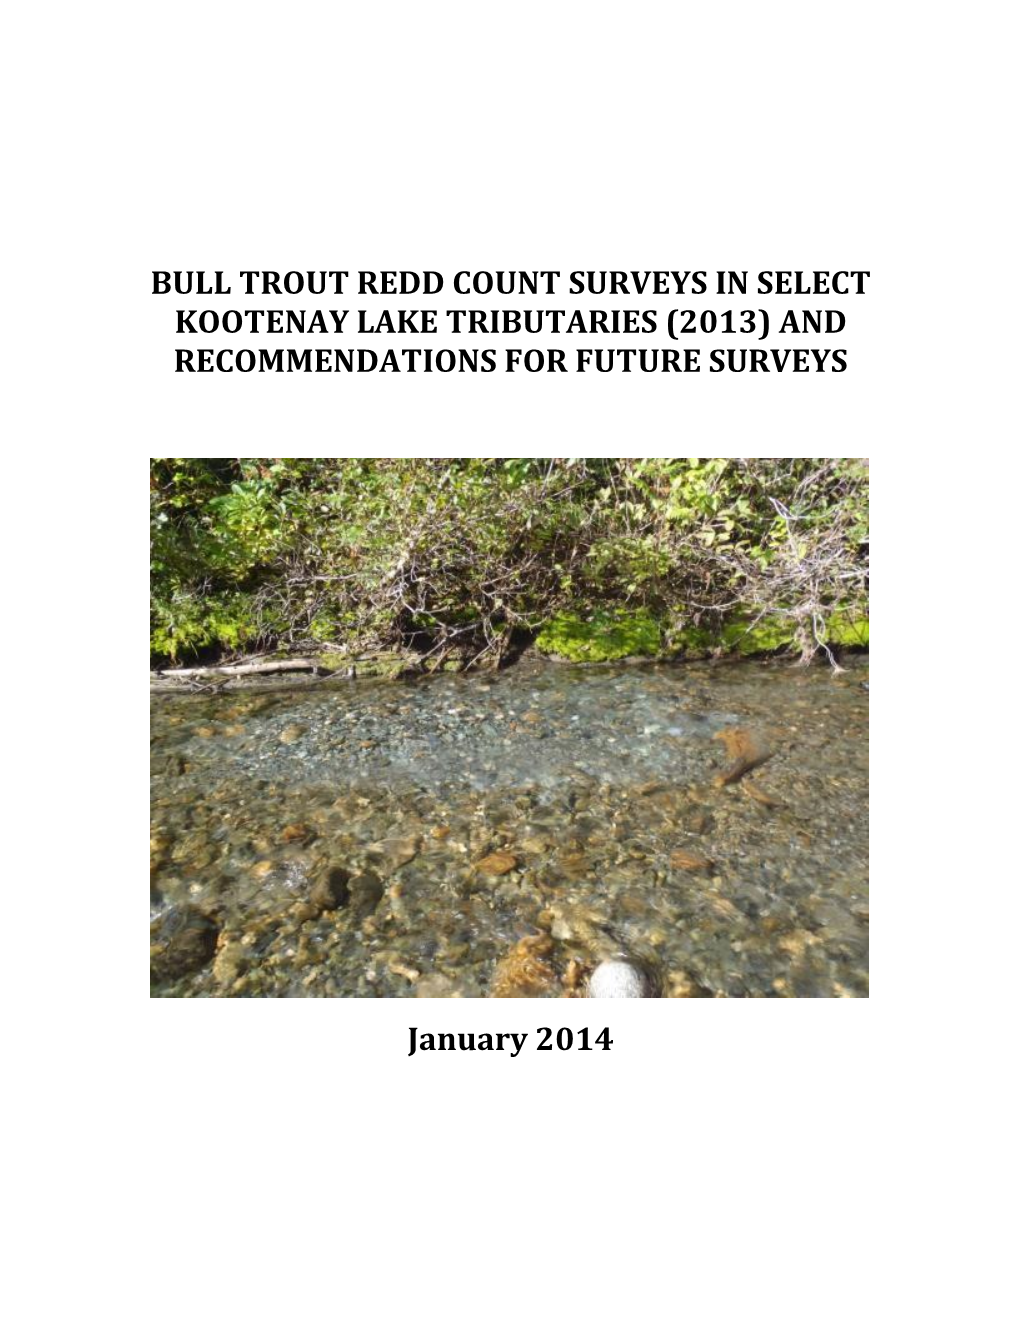 Kootenay Lake Bull Trout Monitoring